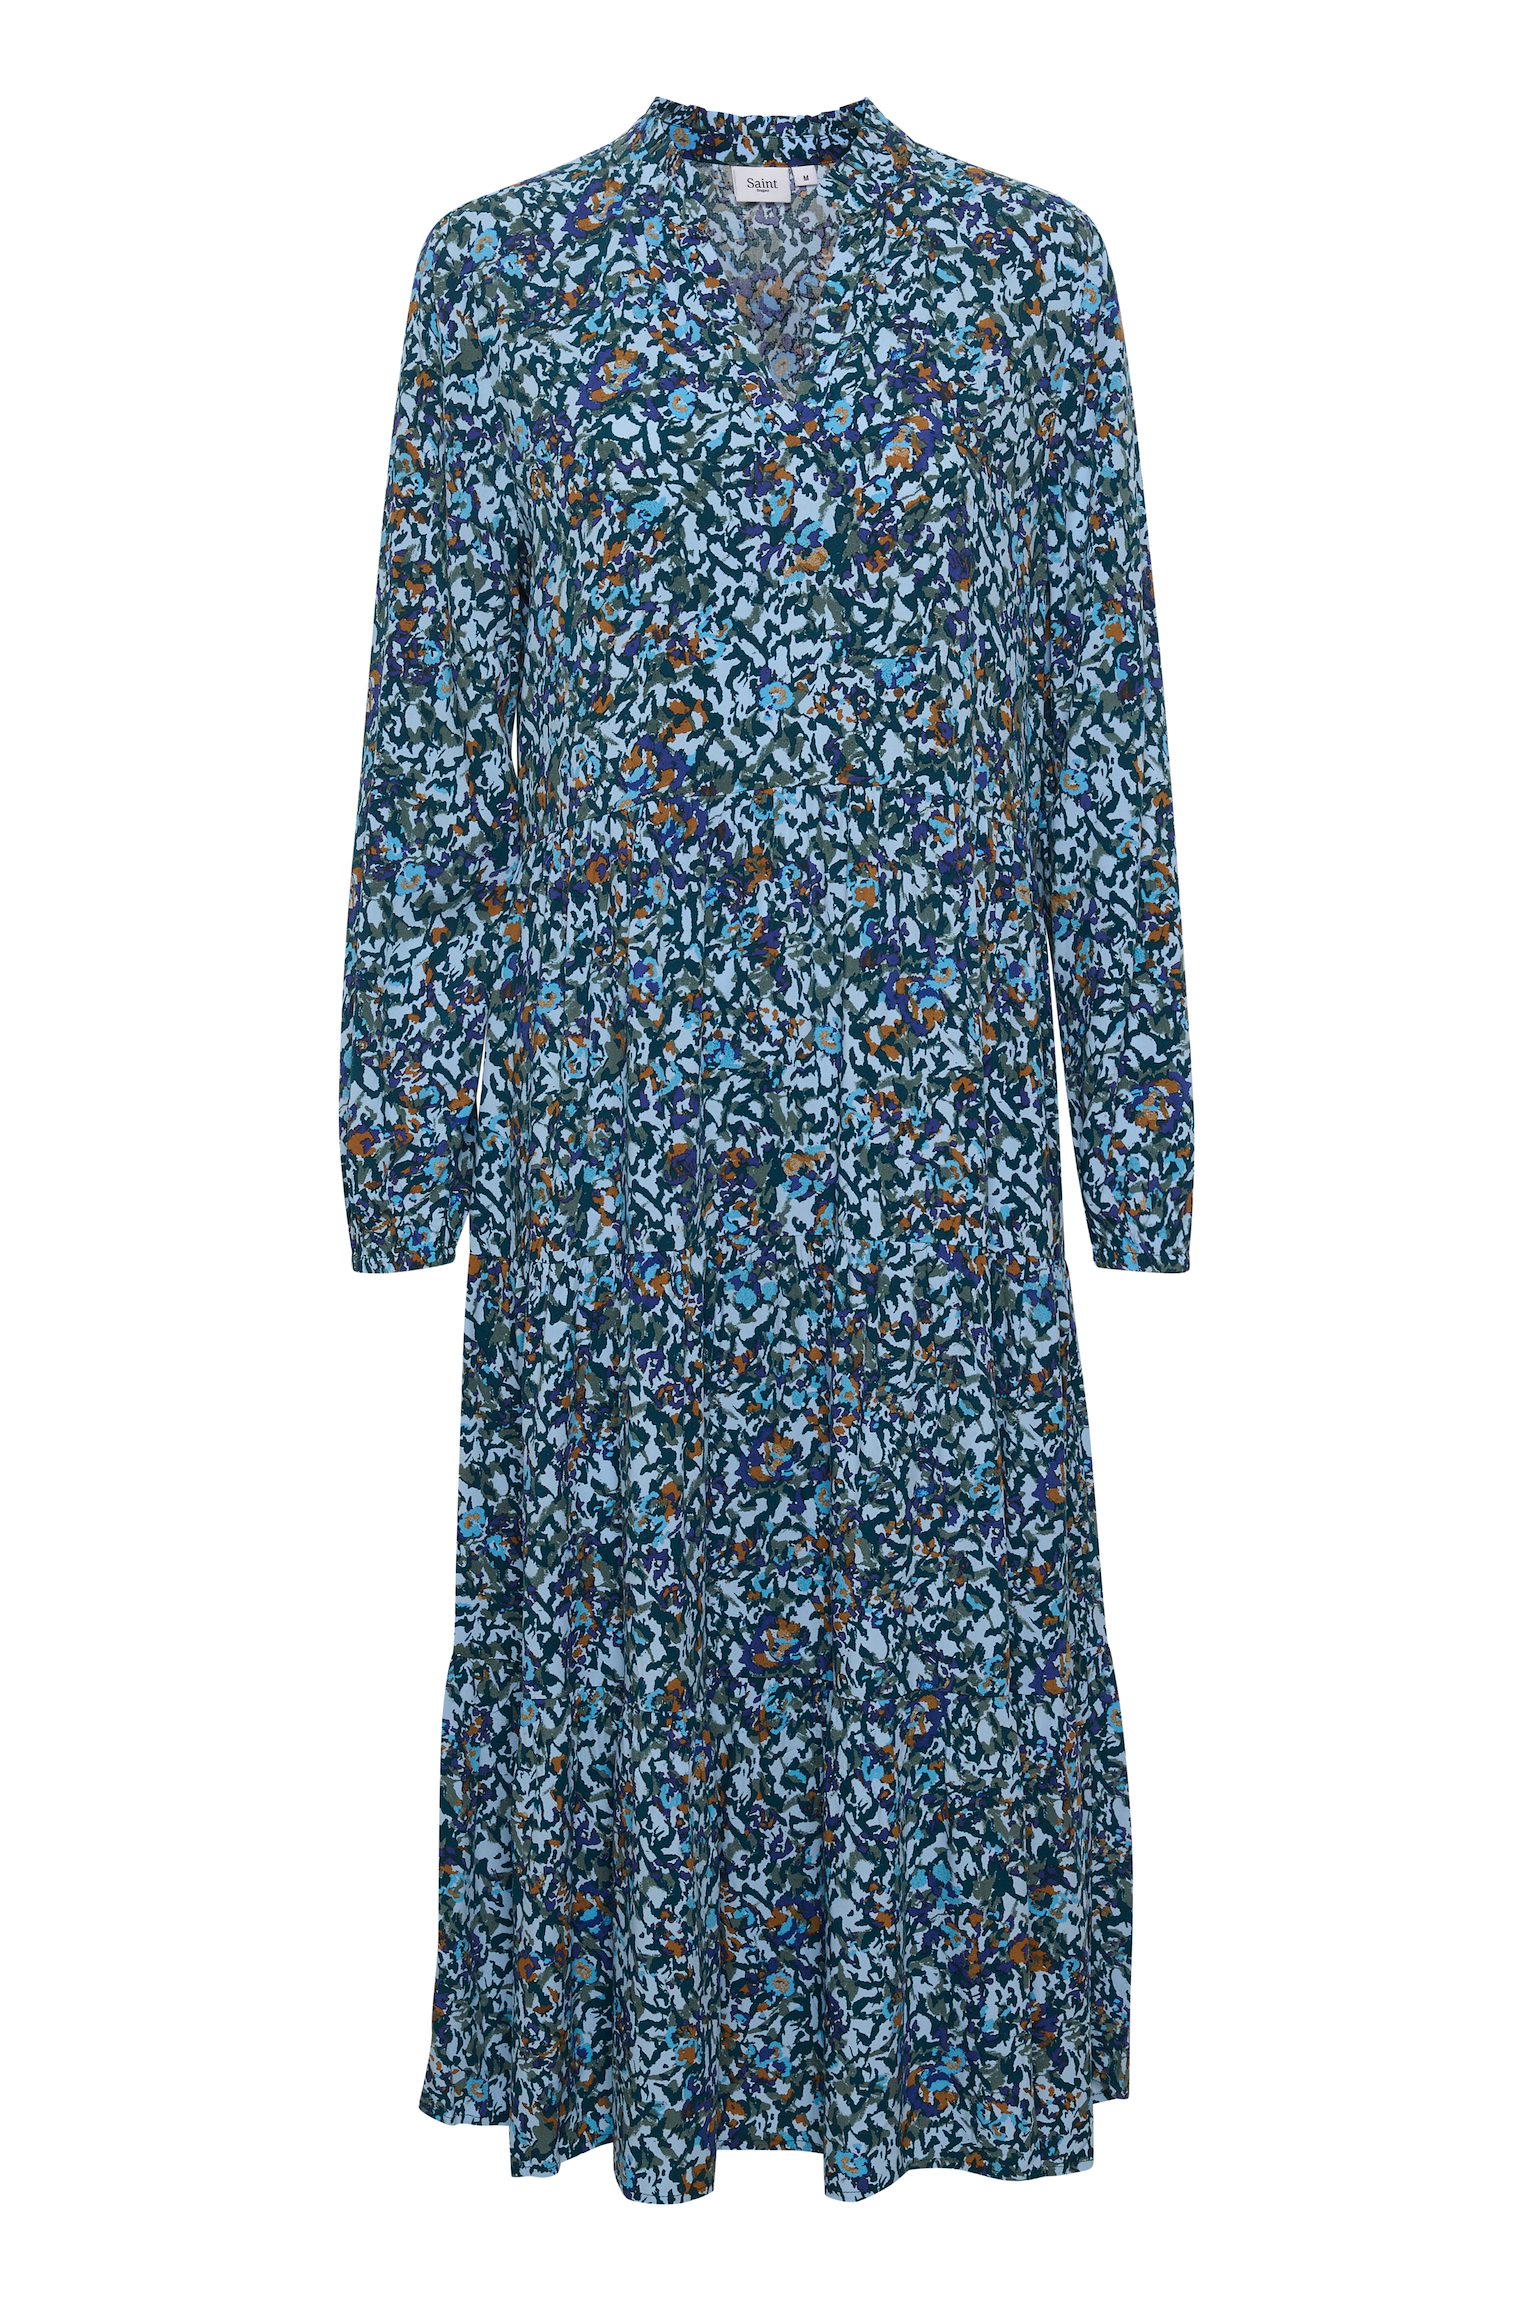 Maxi Tropez – EDASZ Blue Fig DRESS Atlantis Cashmere Floral Cashmere Saint